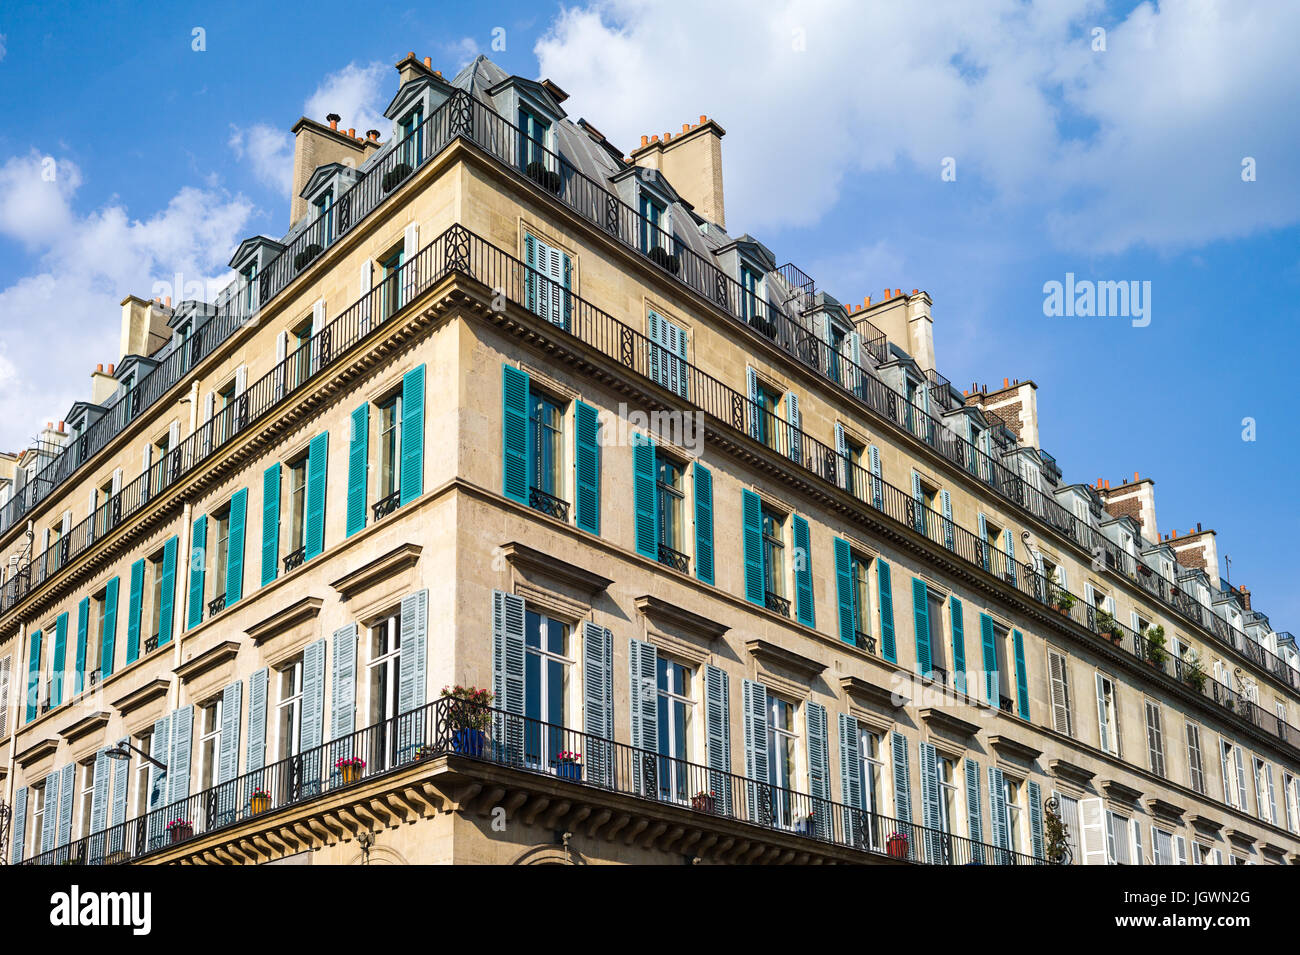 Un immeuble haussmannien typique à Paris avec balcon et volets sous une lumière chaude de fin d'après-midi. Banque D'Images